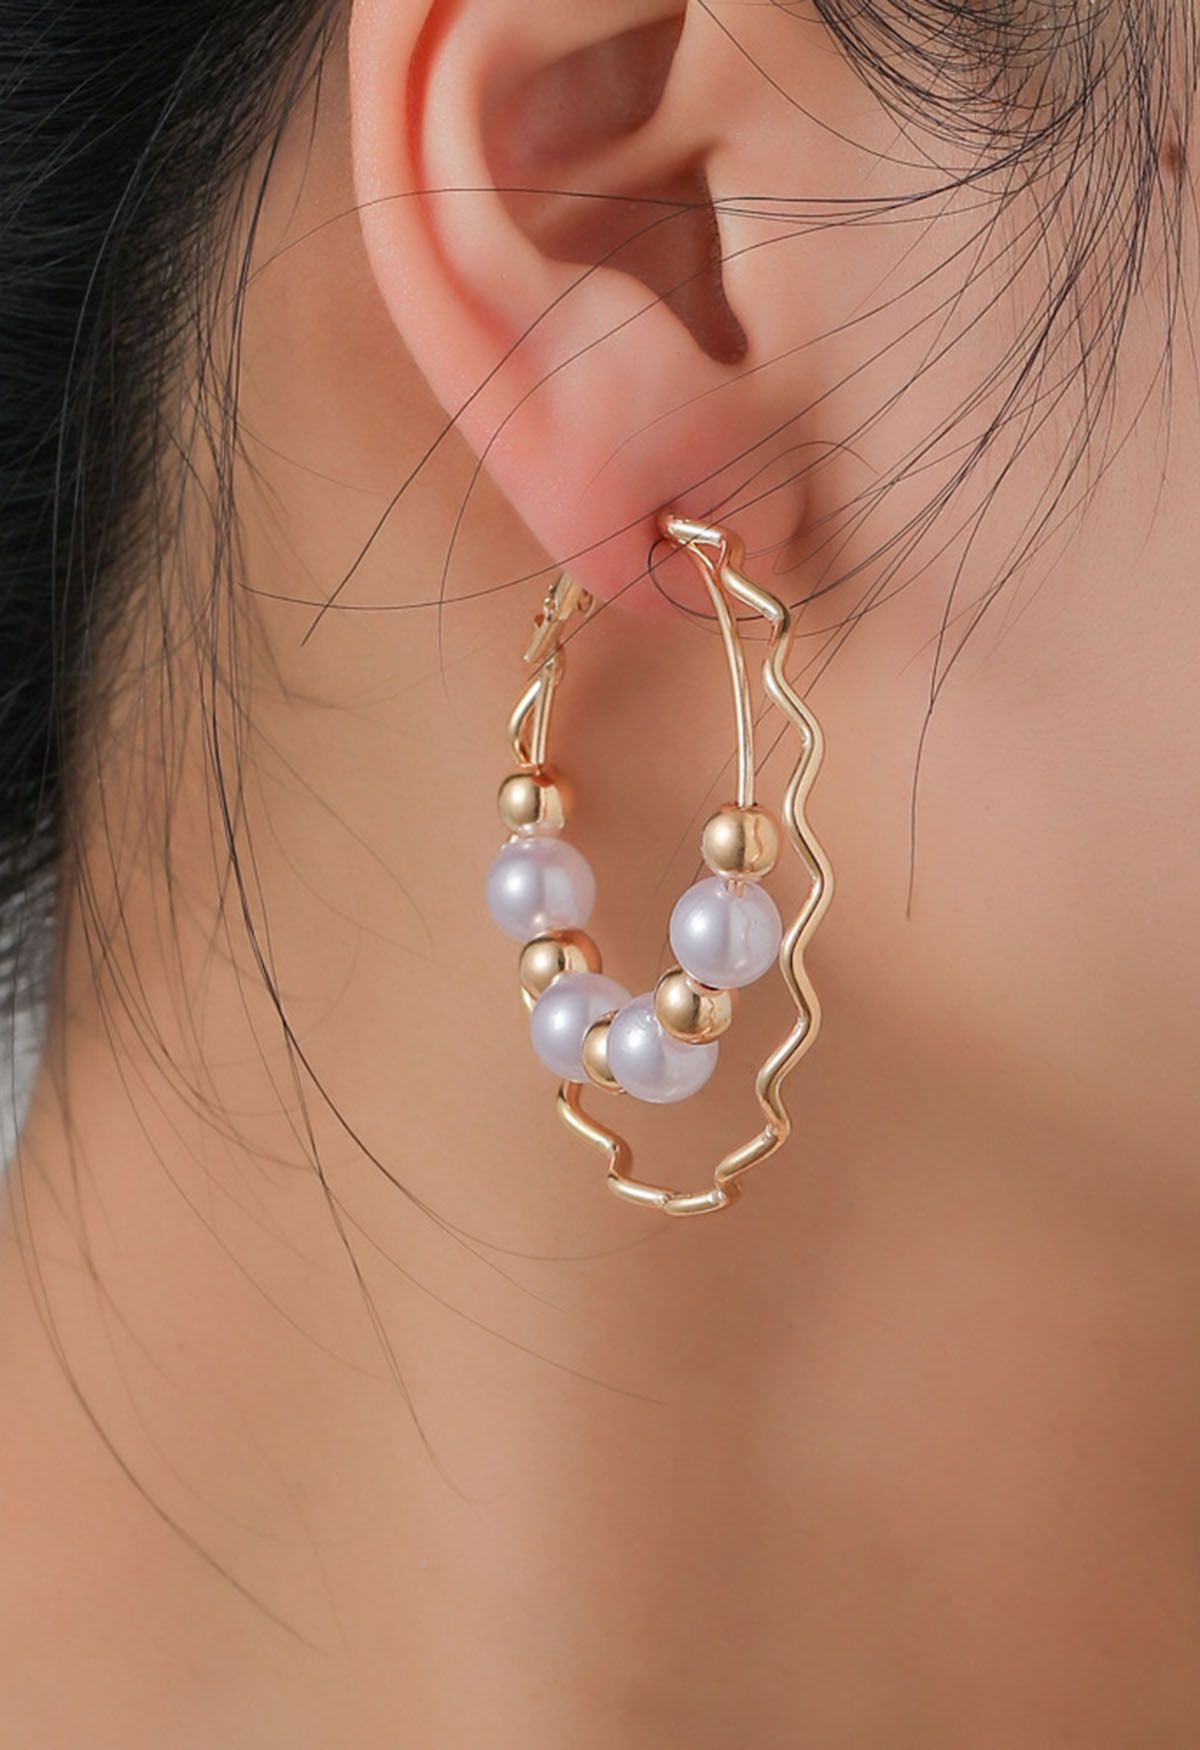 Aretes ondulados de perlas con cuentas de doble capa